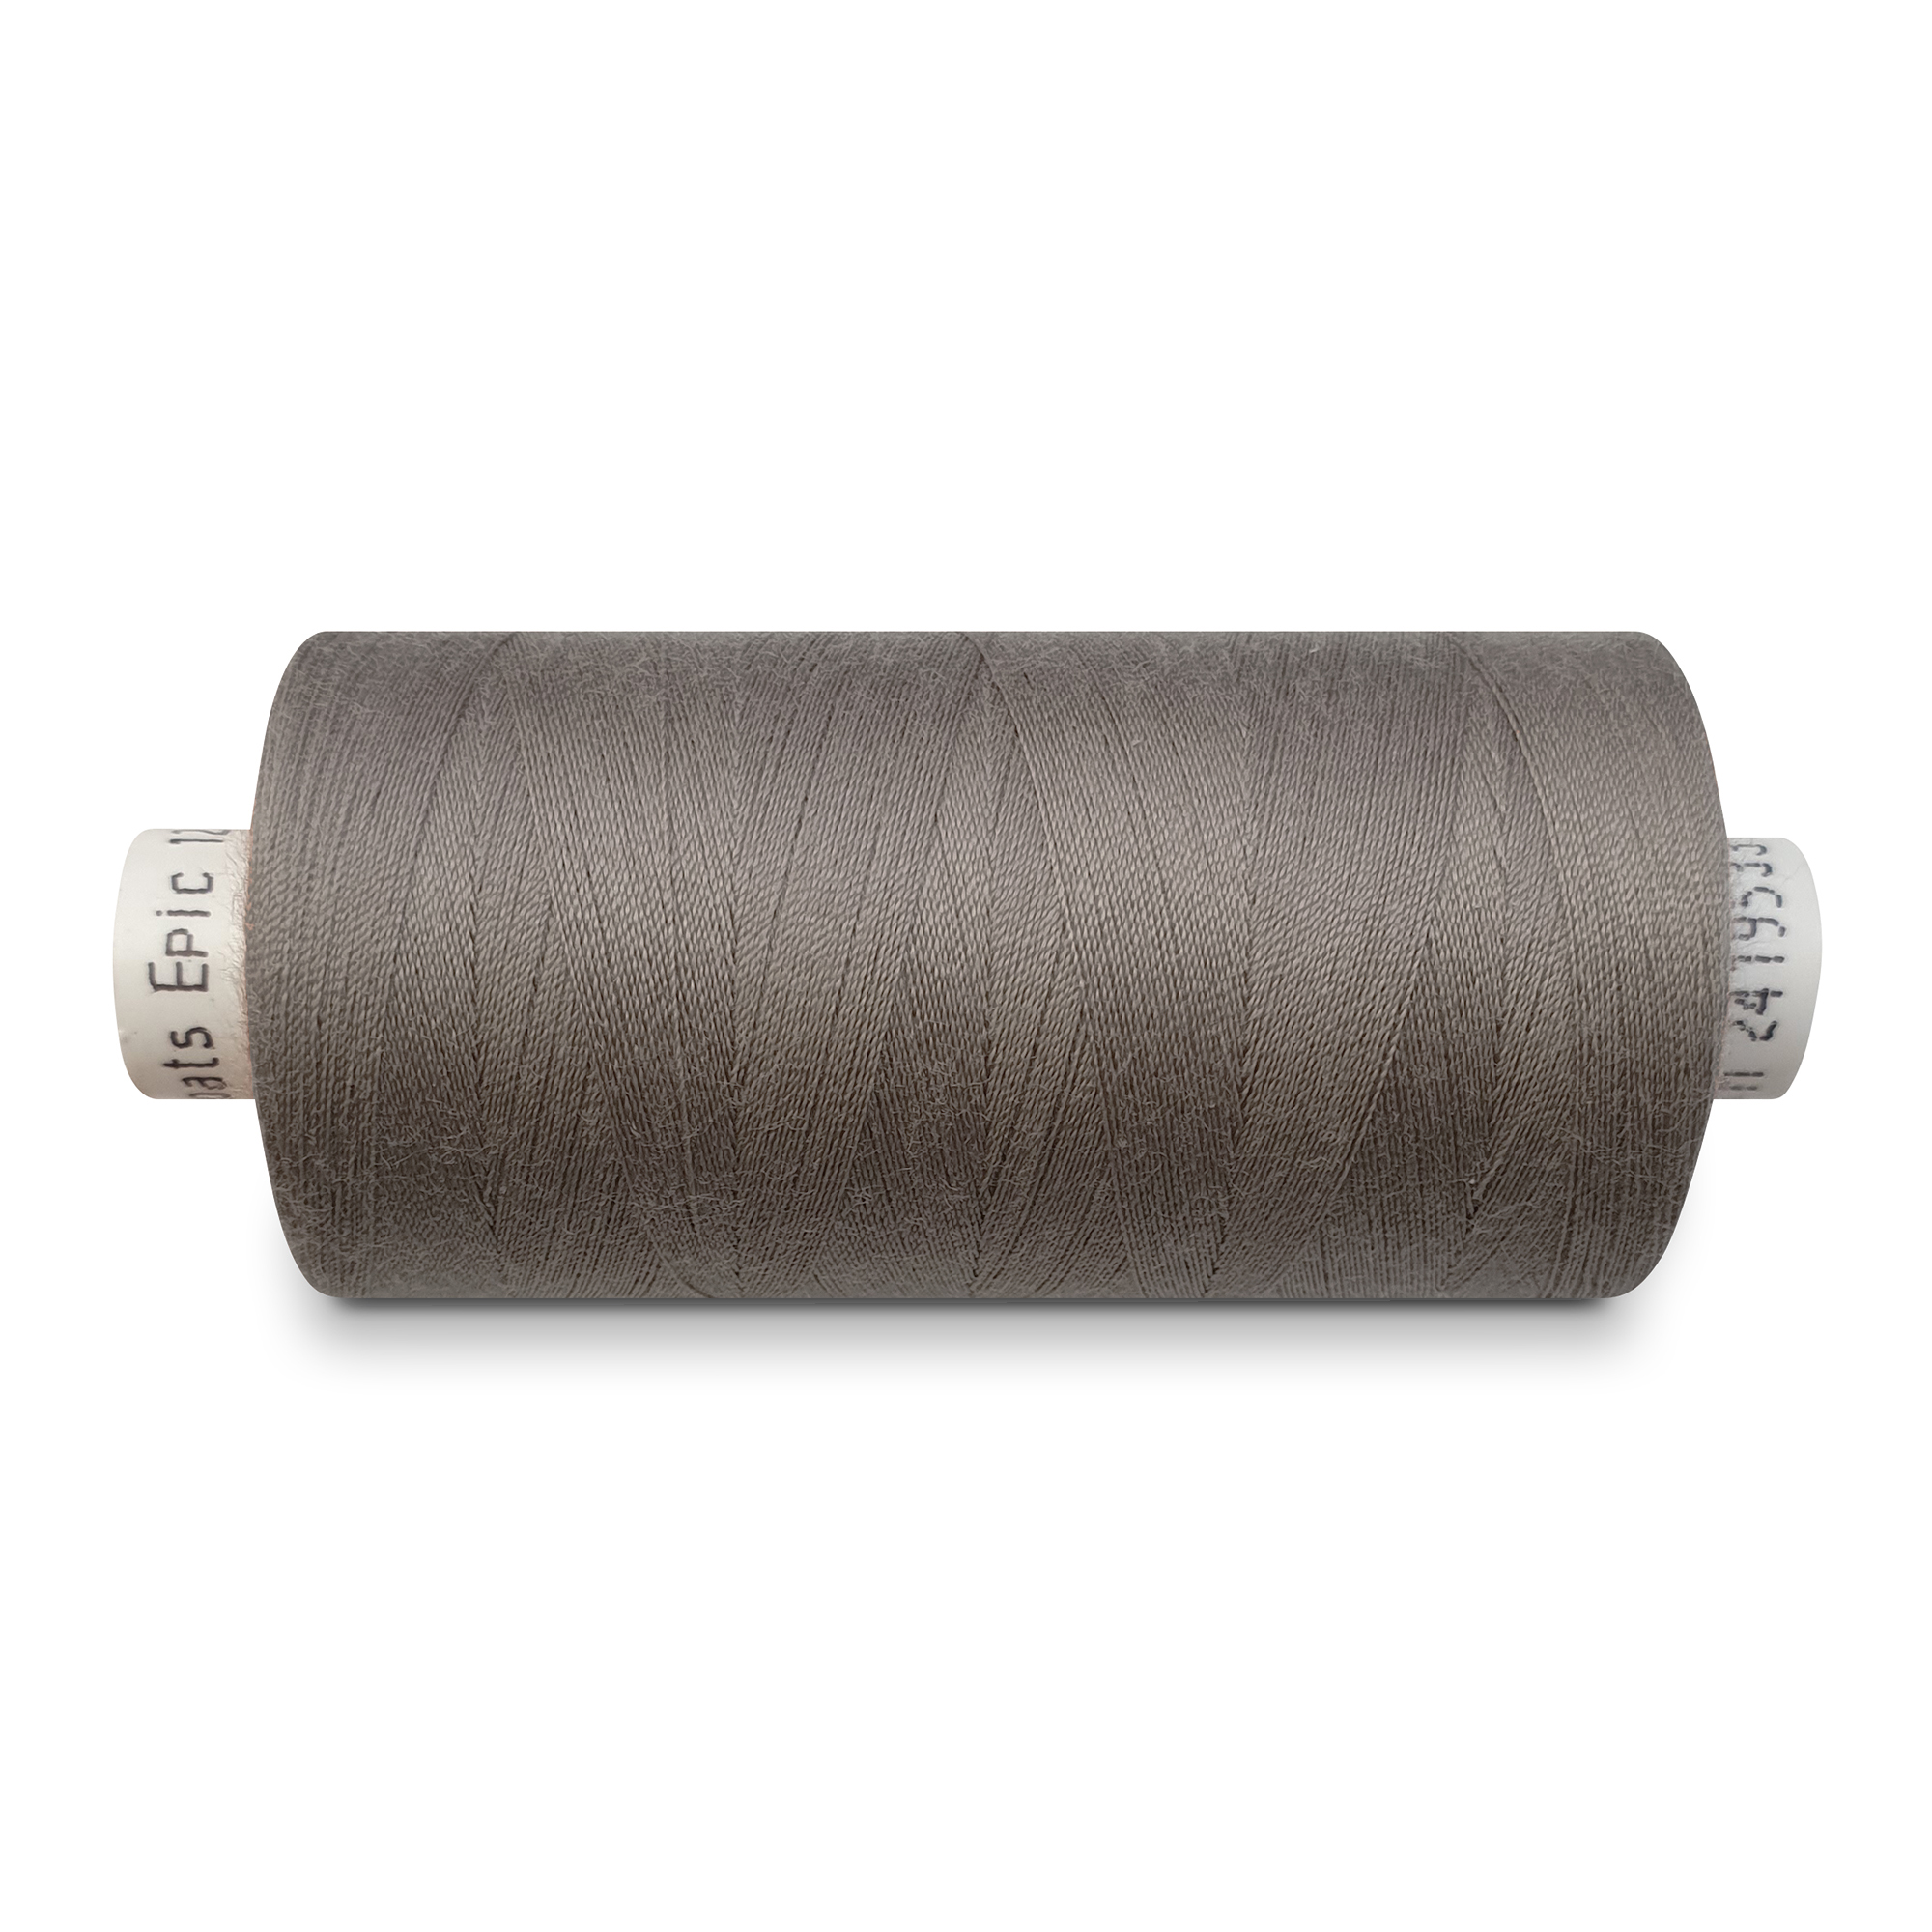 Leather/Sewing thread medium grey brown